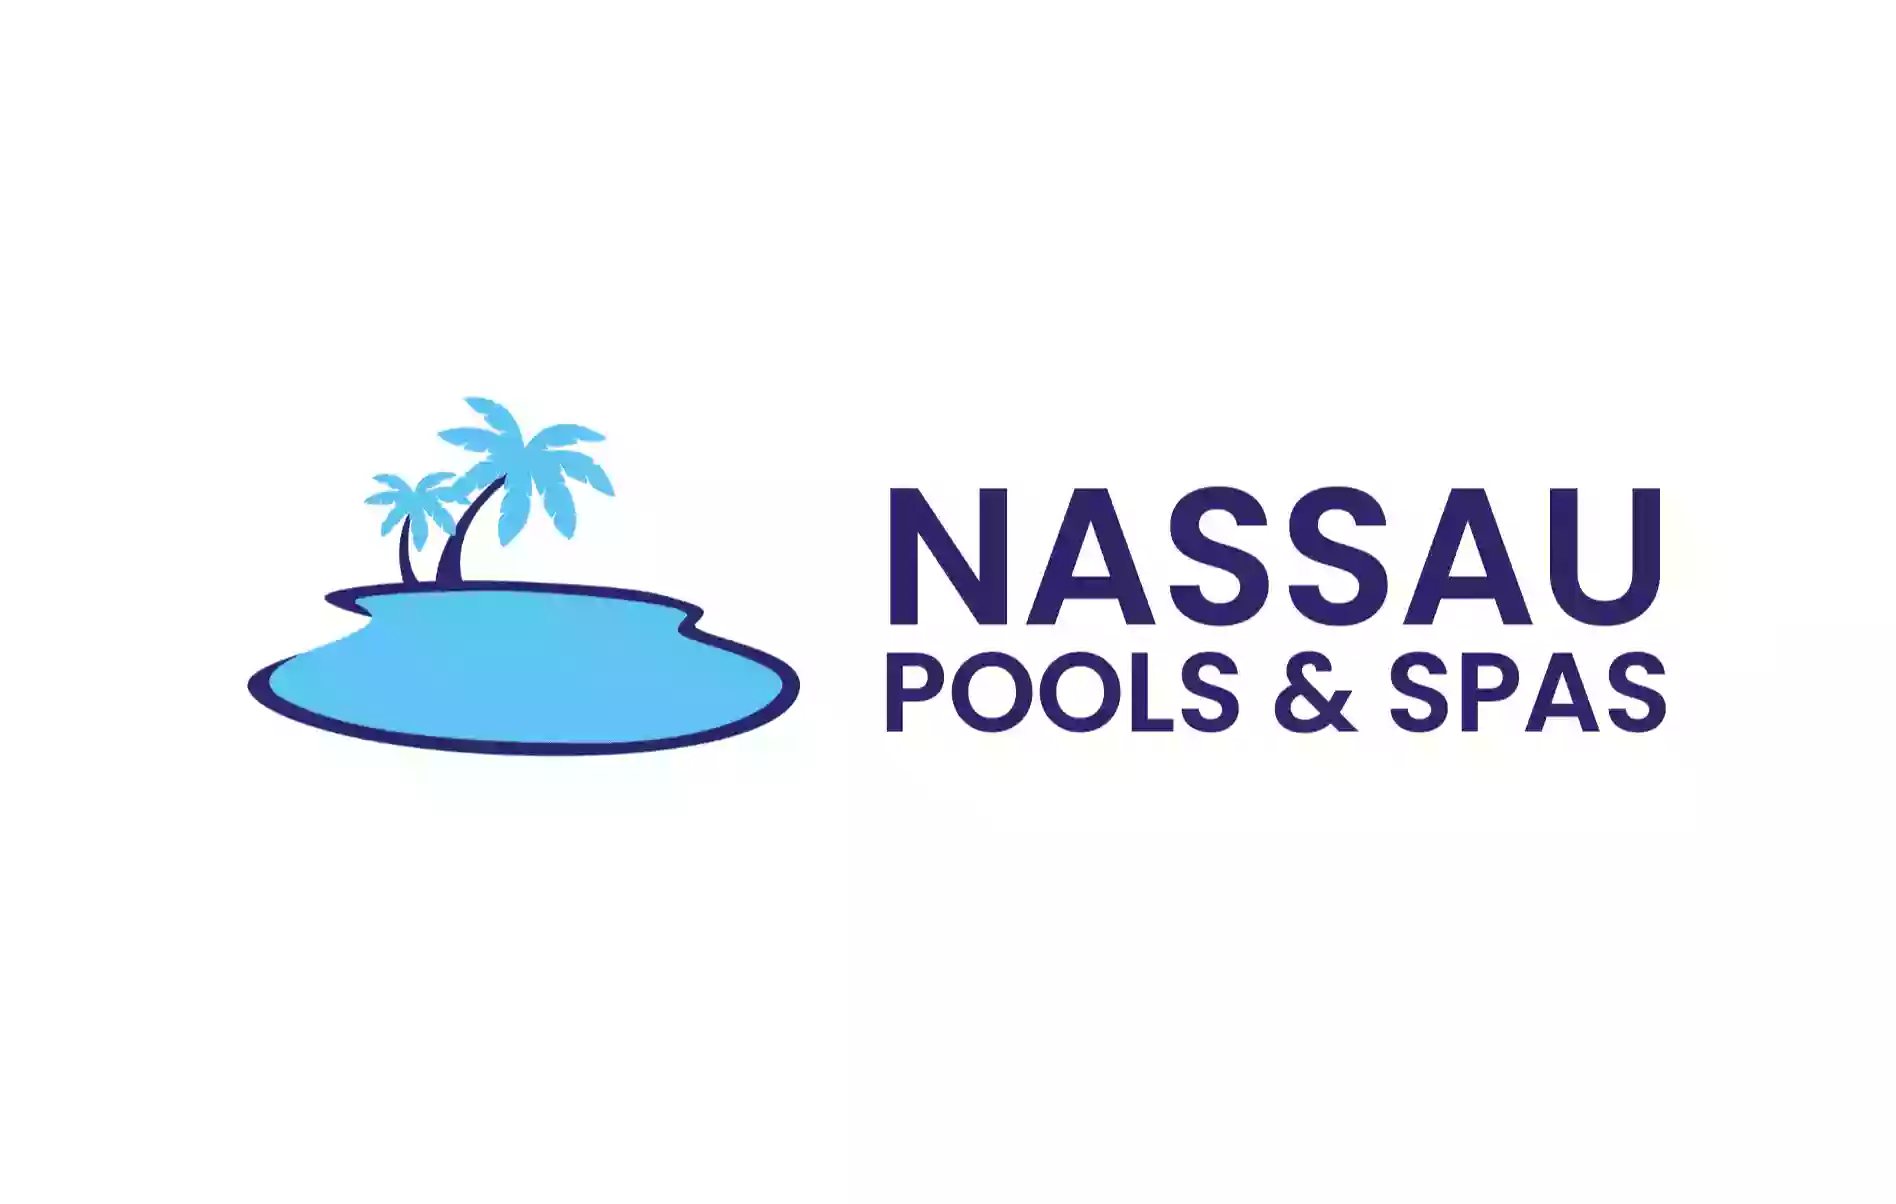 Nassau Pools & Spas